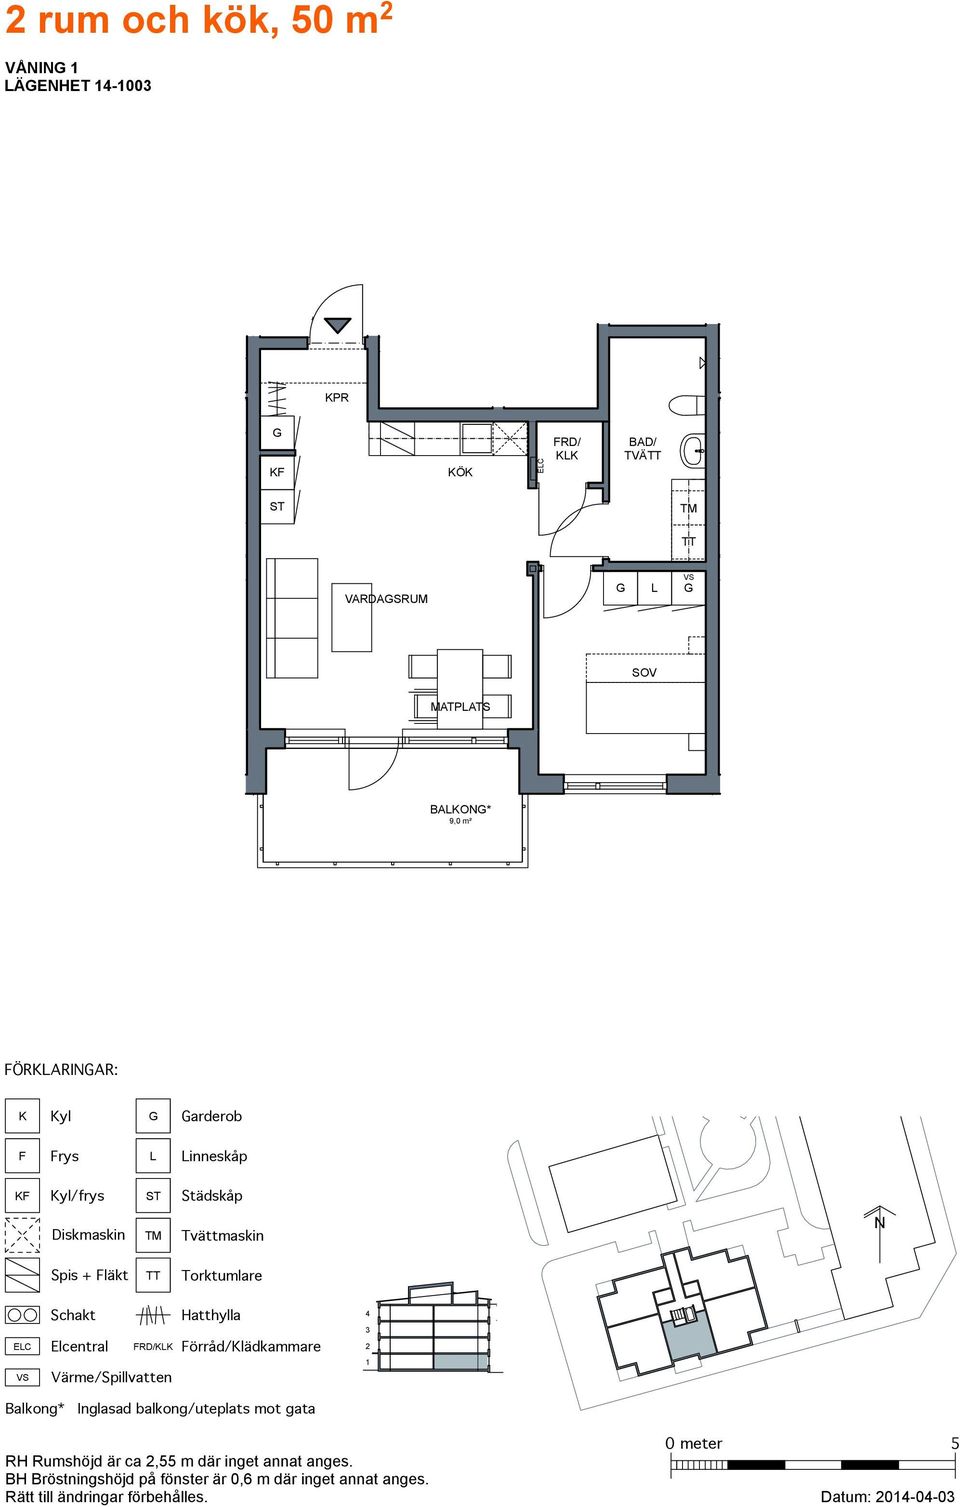 2 rum och kök, 50 m 2 - PDF Gratis nedladdning